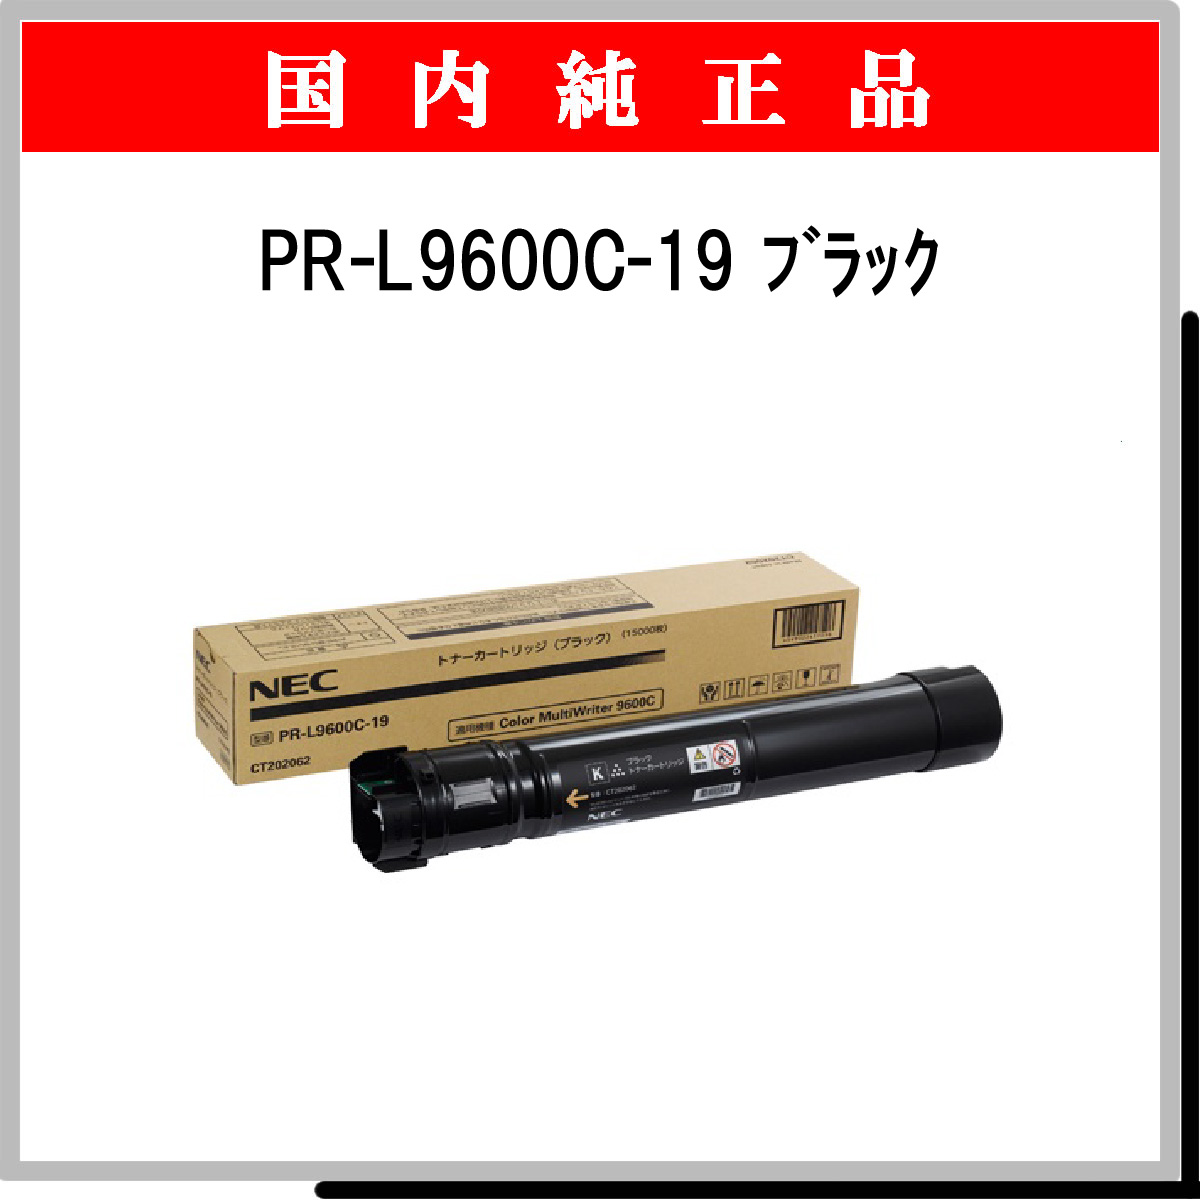 PR-L9600C-19 (大容量) 純正